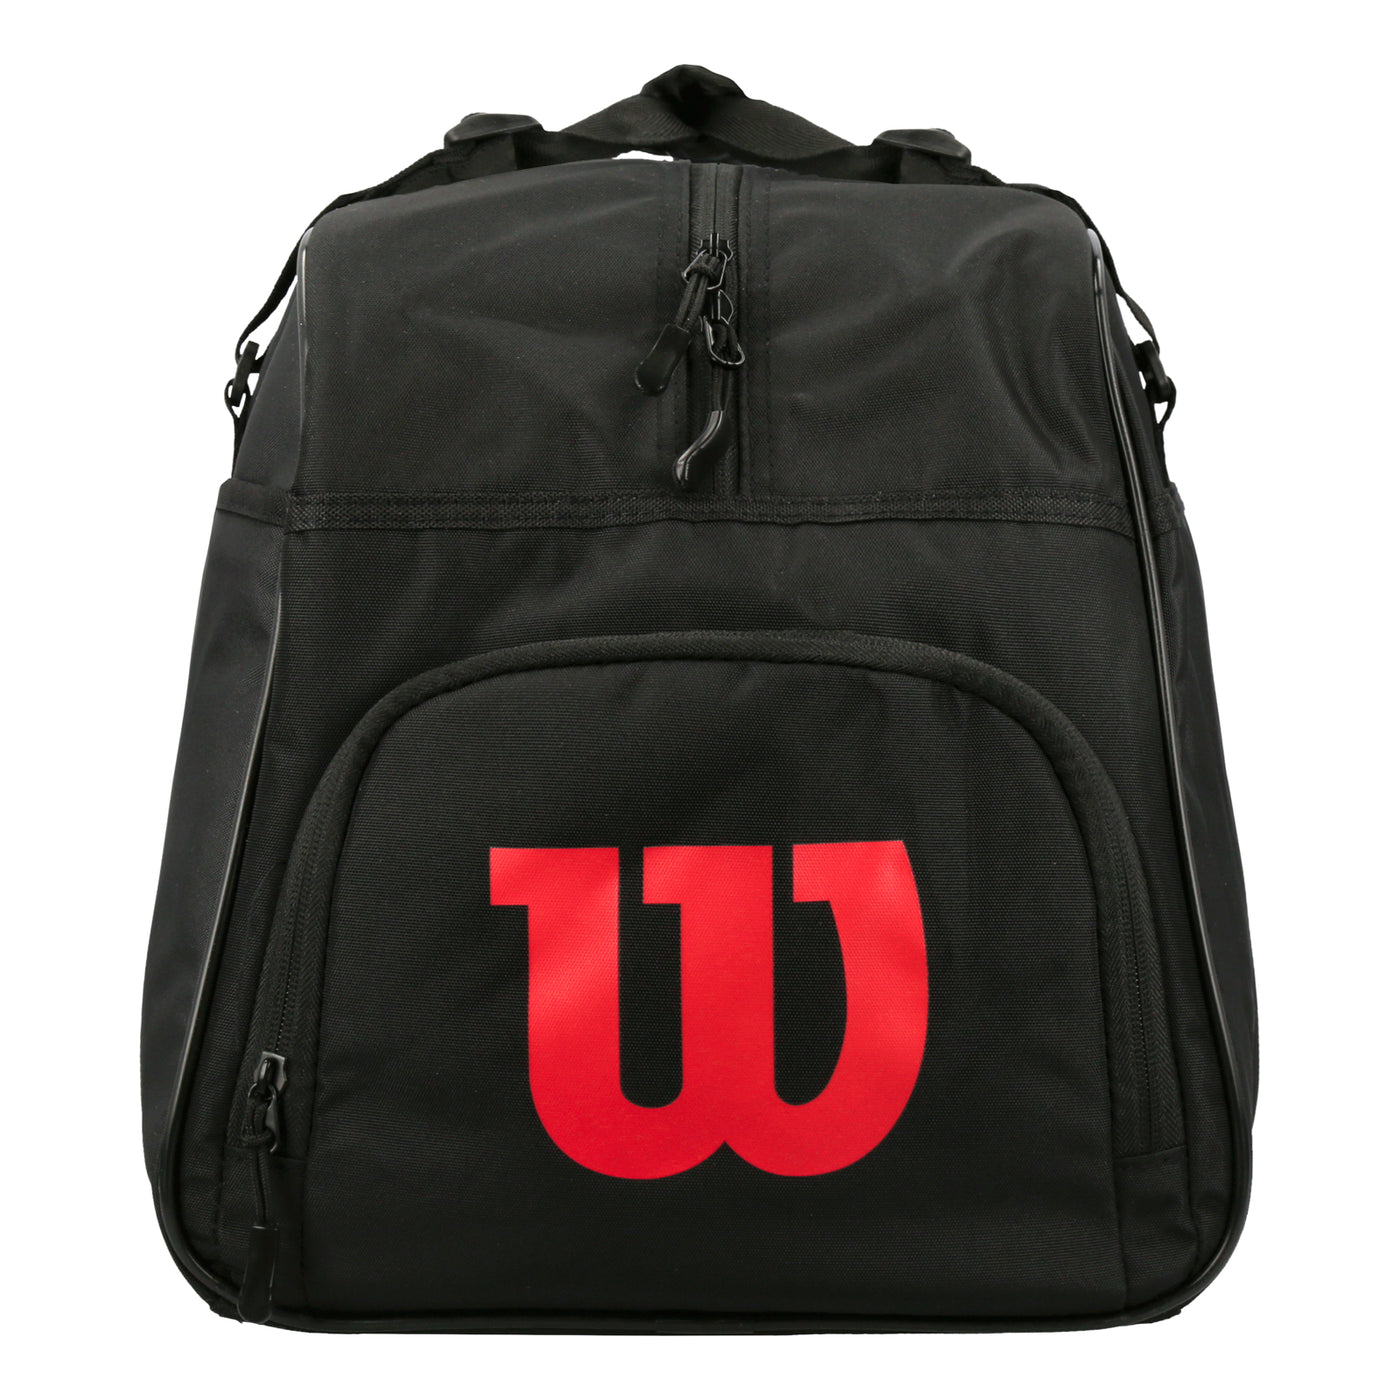 Wilson X Billebeino Duffel Bag